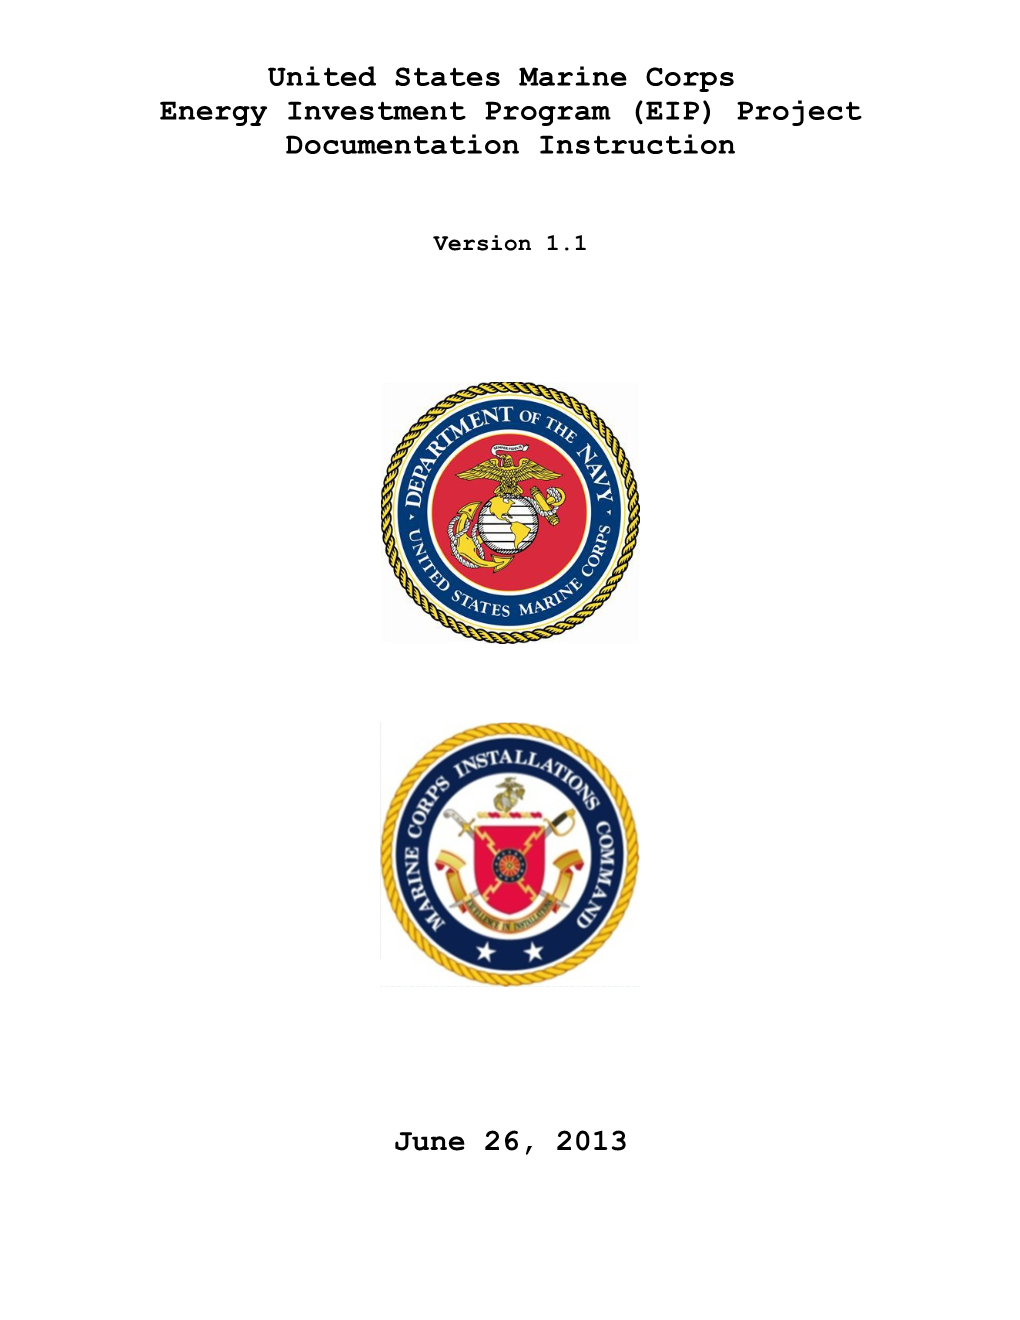 United States Marine Corps EIP Project Documentation Instruction